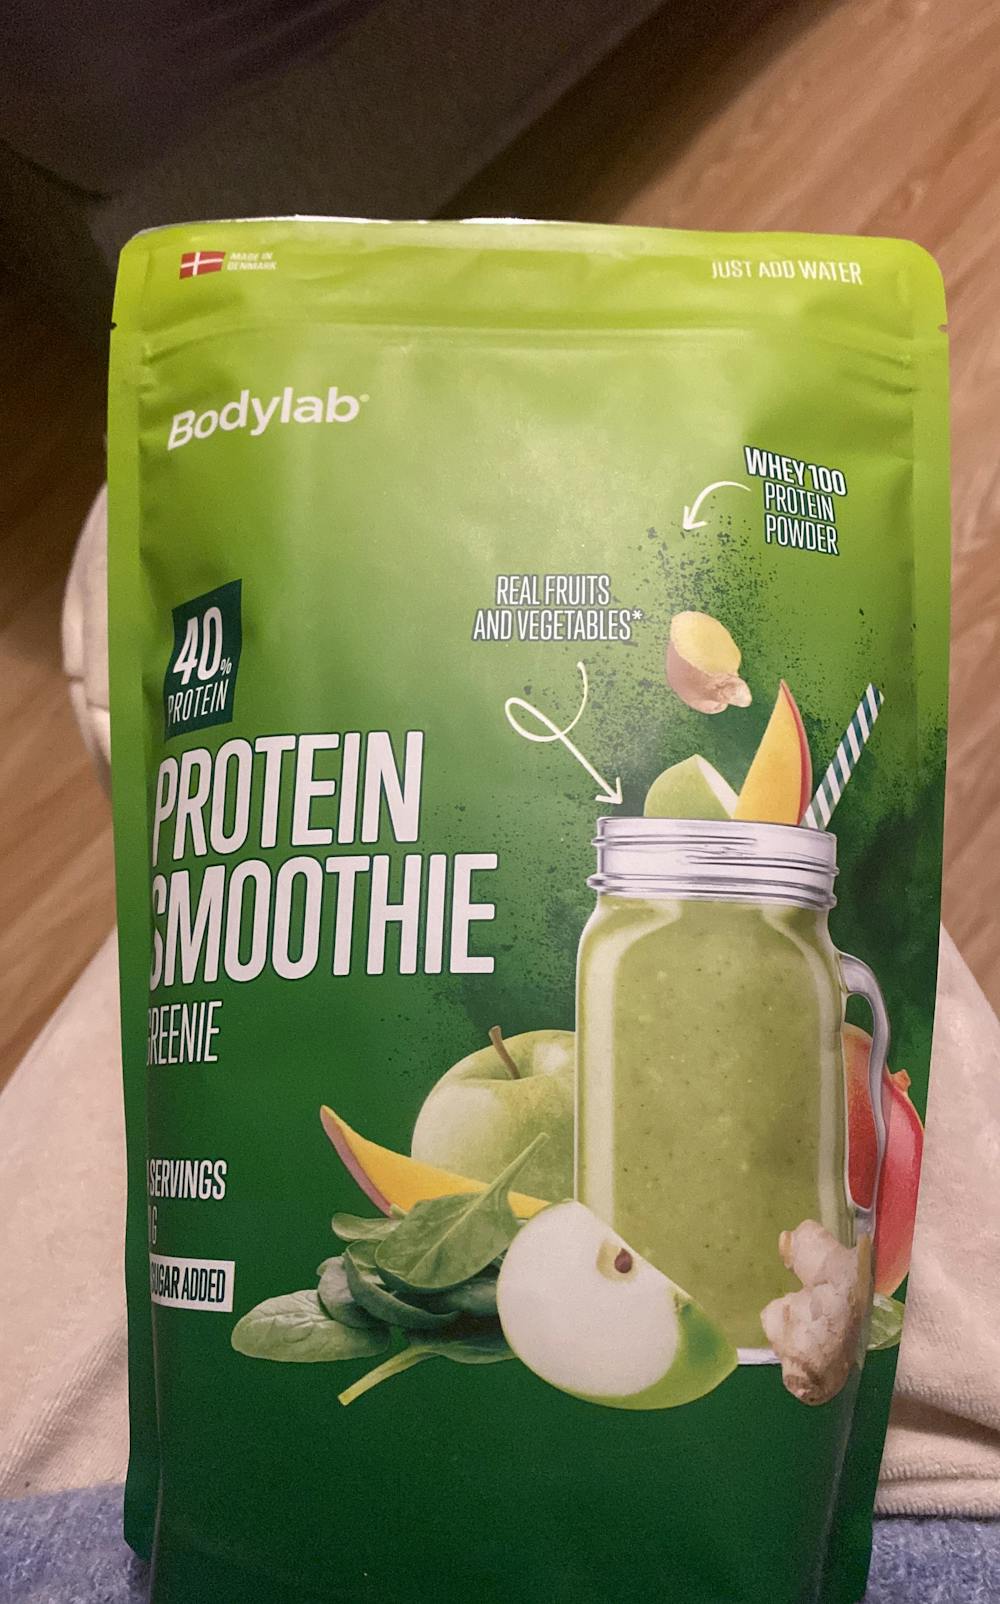 Protein smoothie greenie, Bodylab